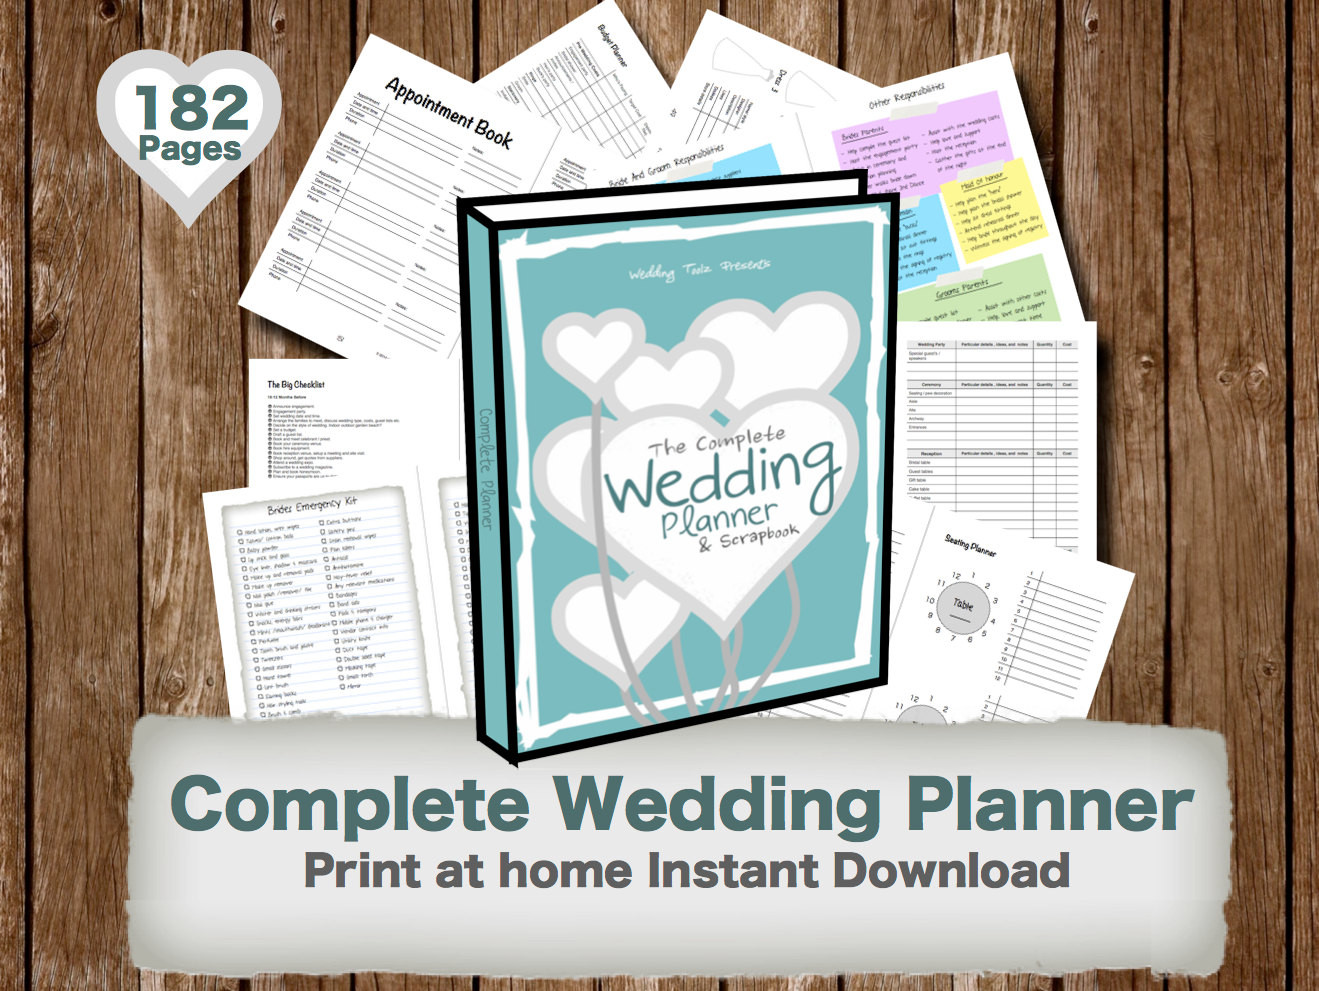 Wedding Planner And Organizer
 Wedding Planner book wedding organizer Print by